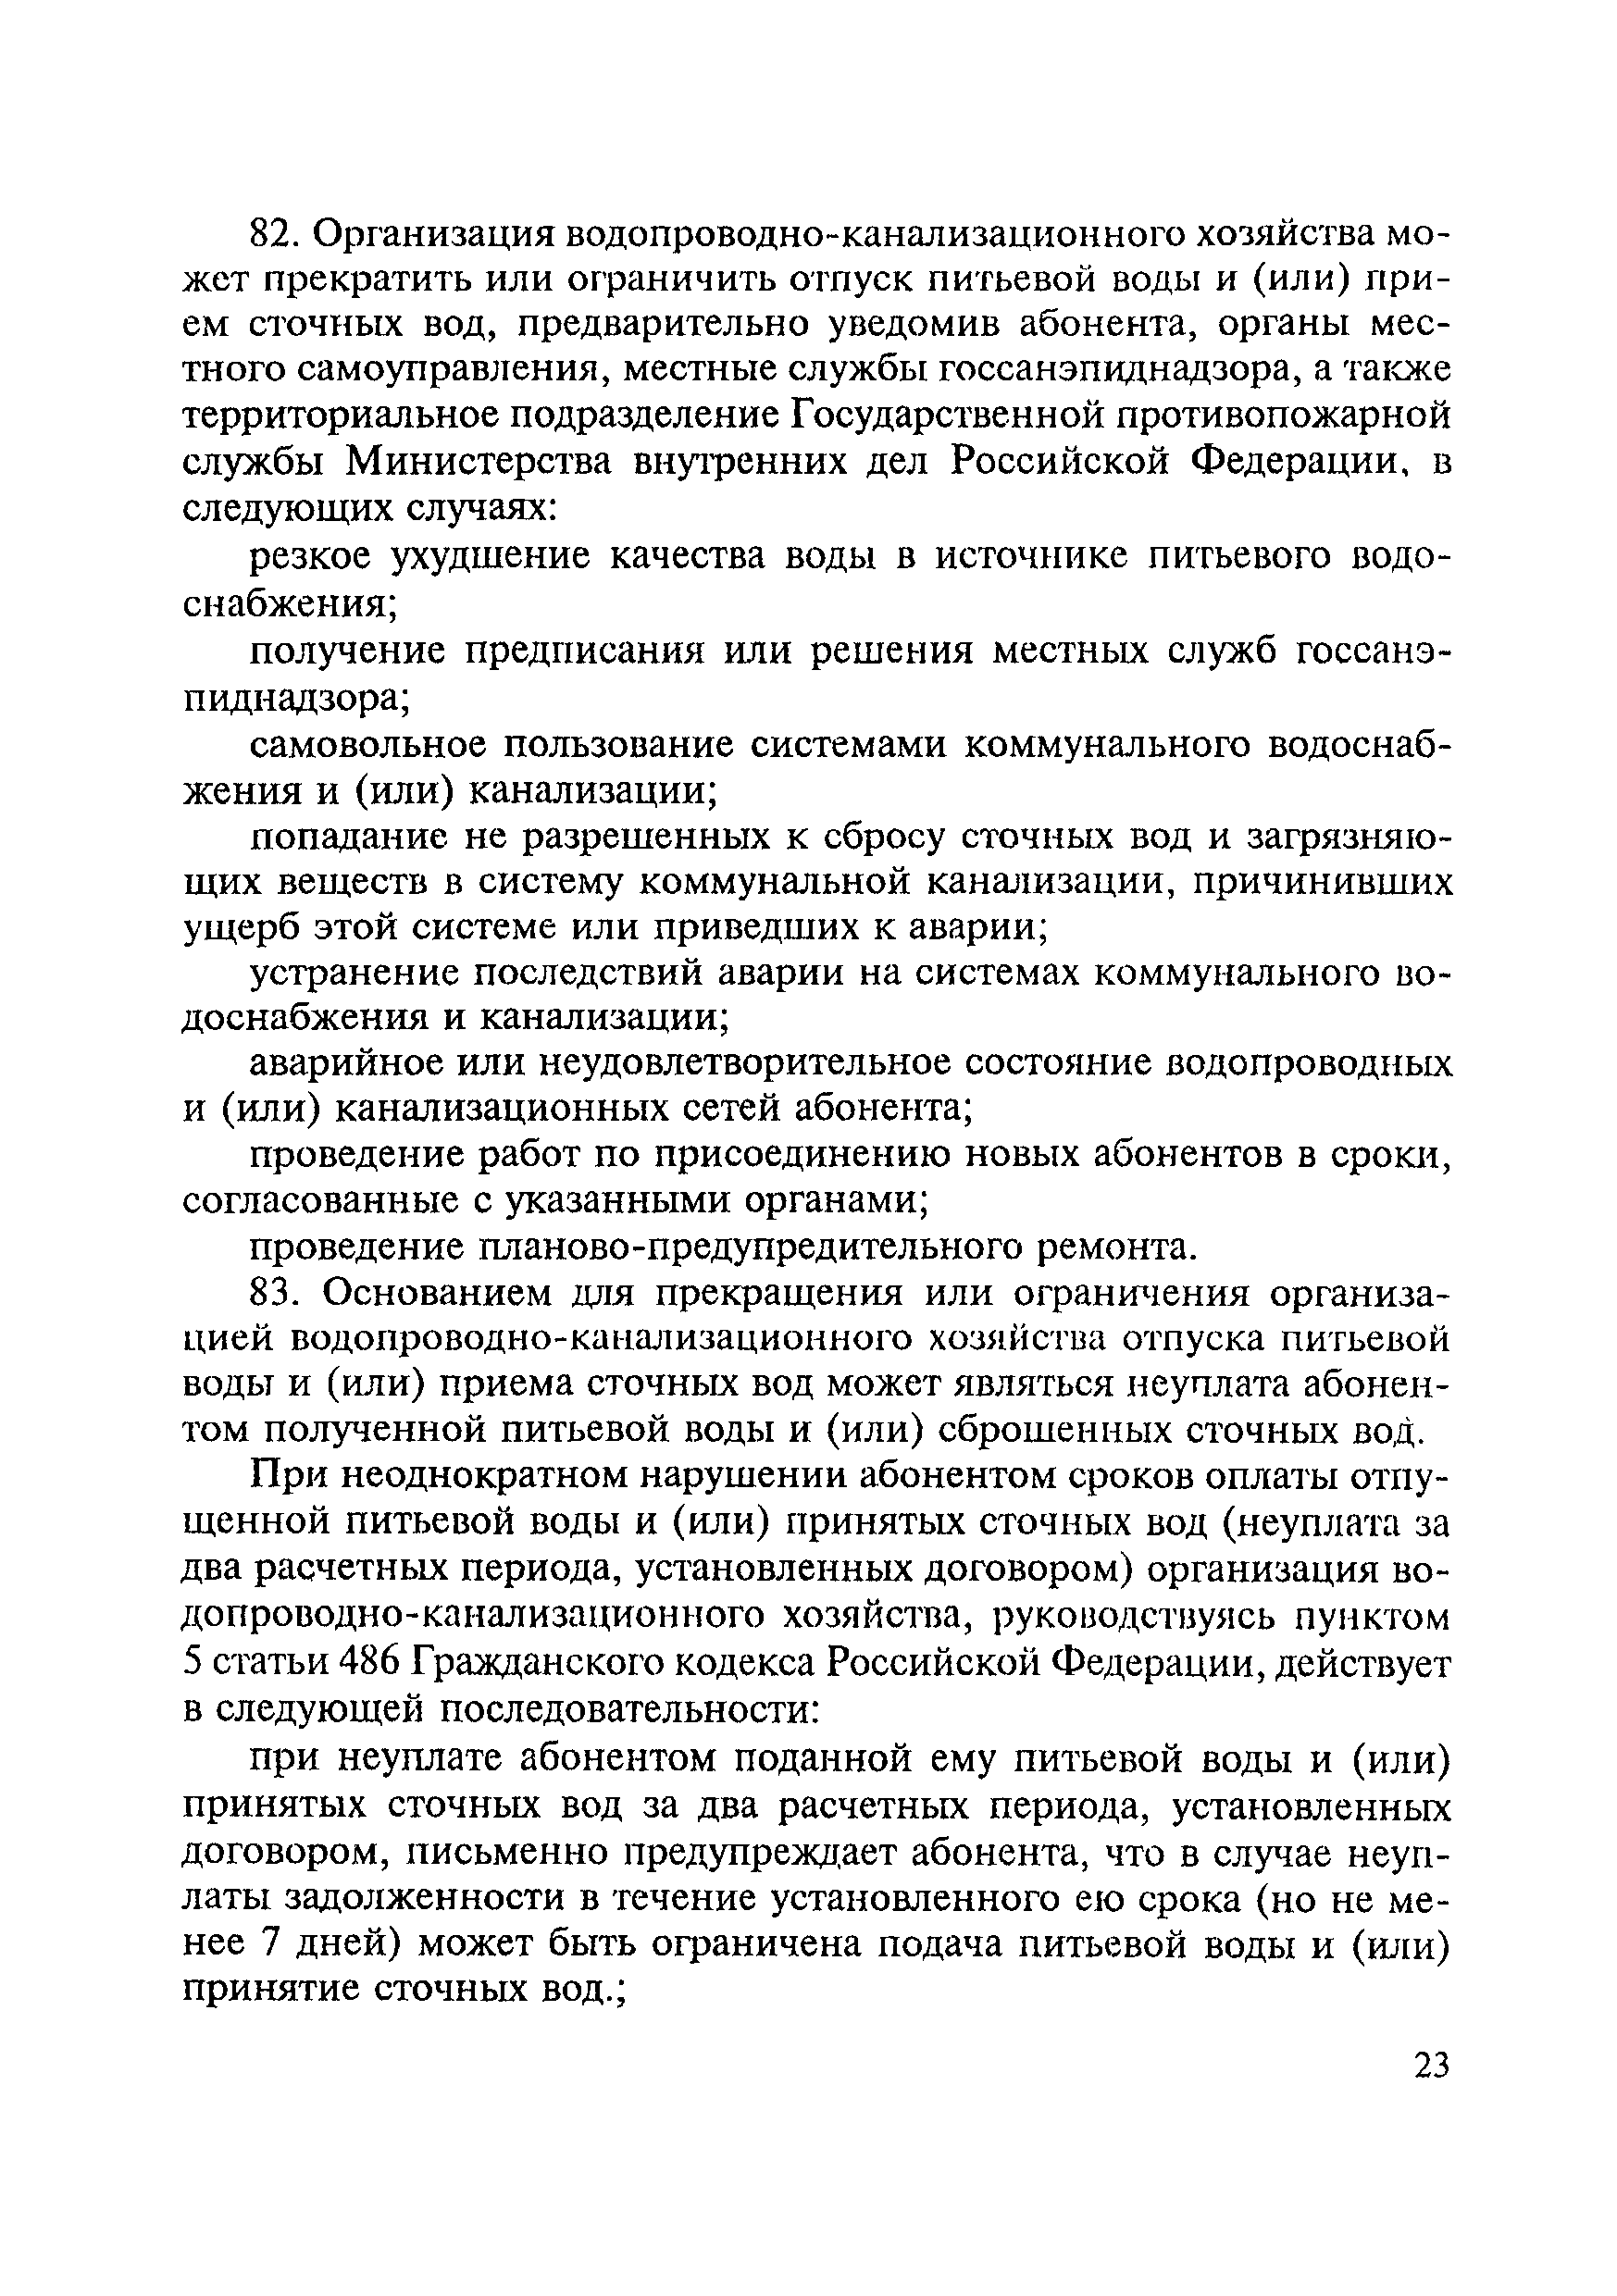 МДС 40-1.2000